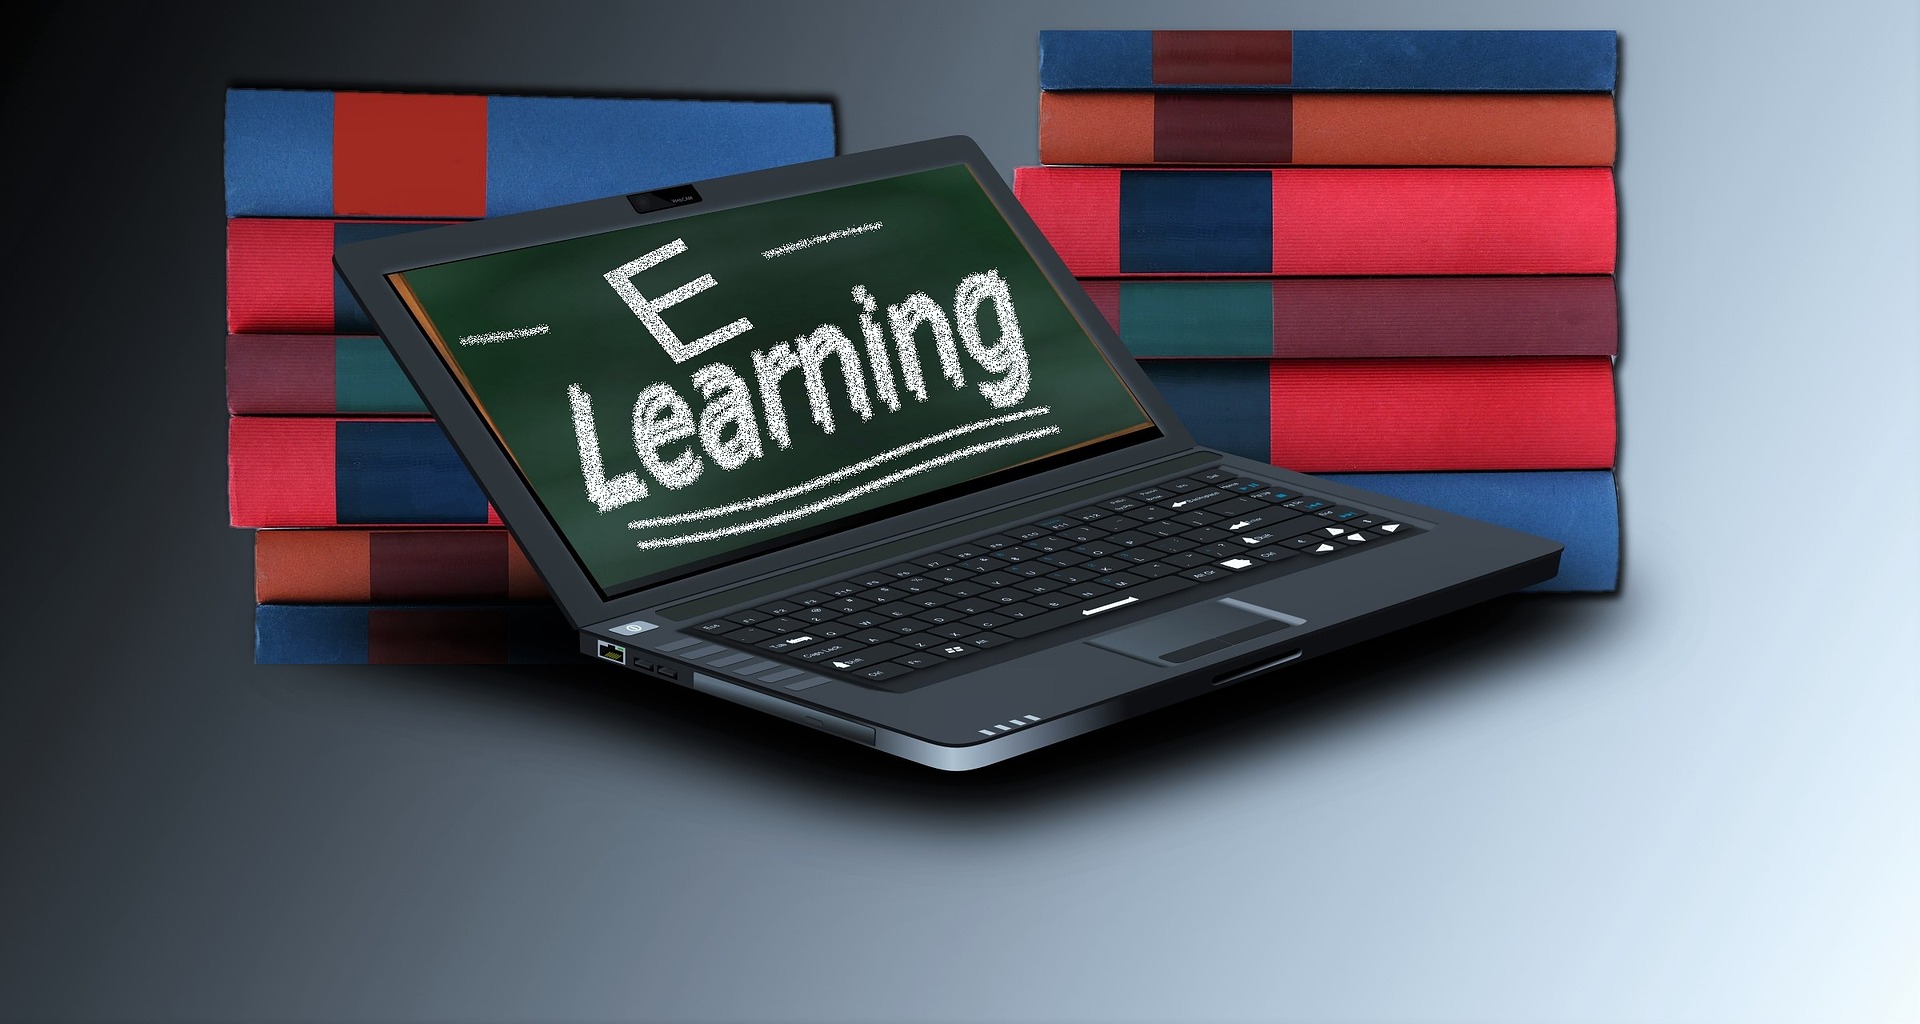 Rusza pierwszy kurs e-learningowy!